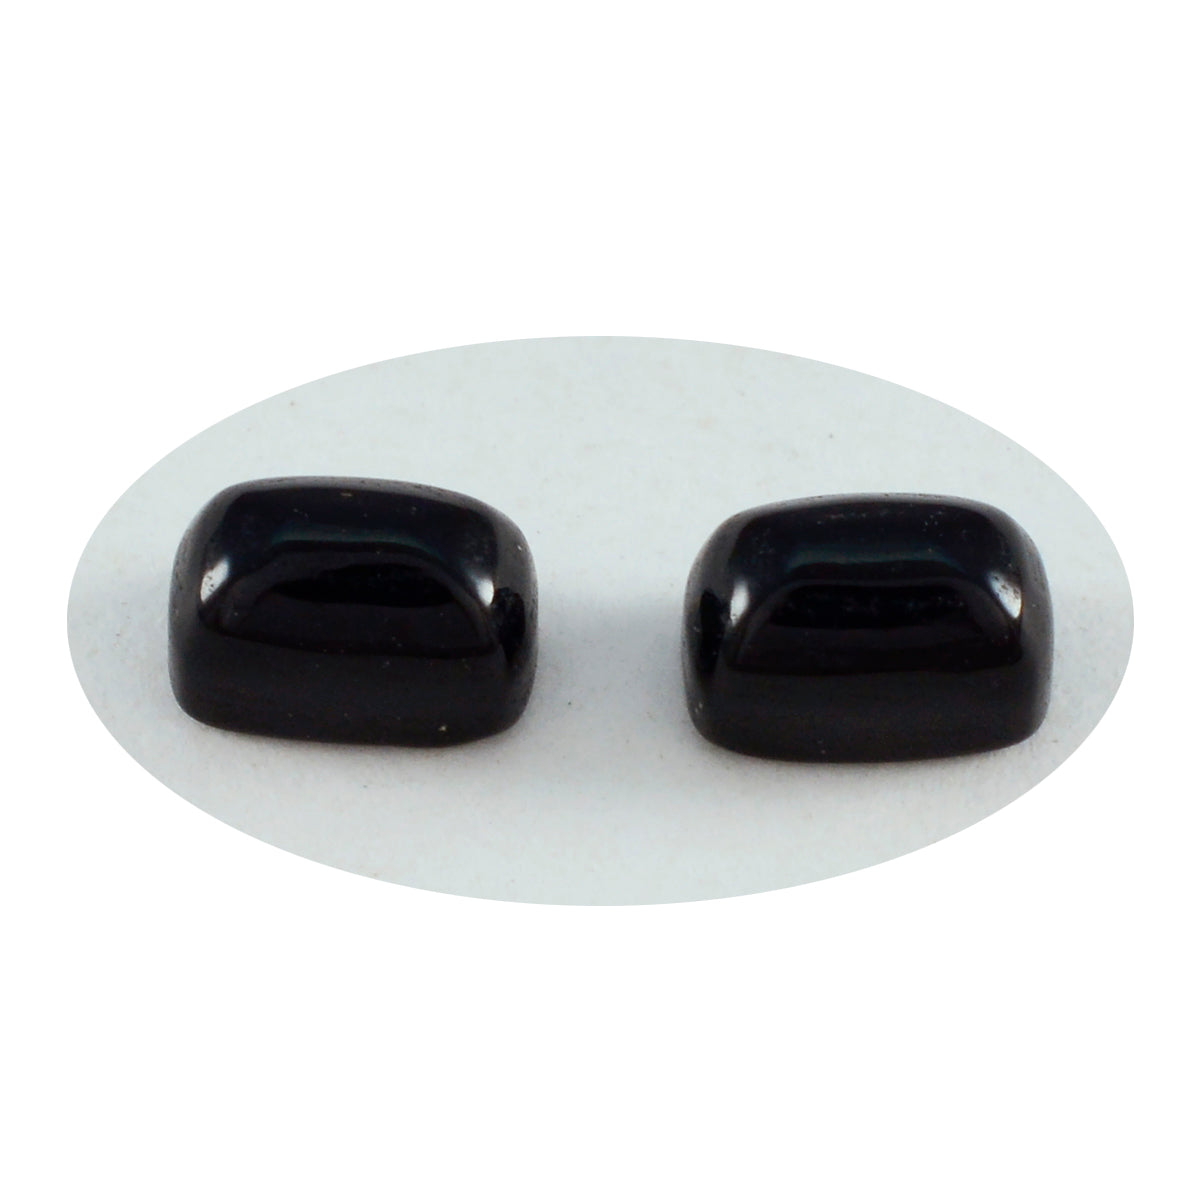 Riyogems 1 Stück schwarzer Onyx-Cabochon, 5 x 7 mm, achteckige Form, gut aussehender, hochwertiger loser Edelstein